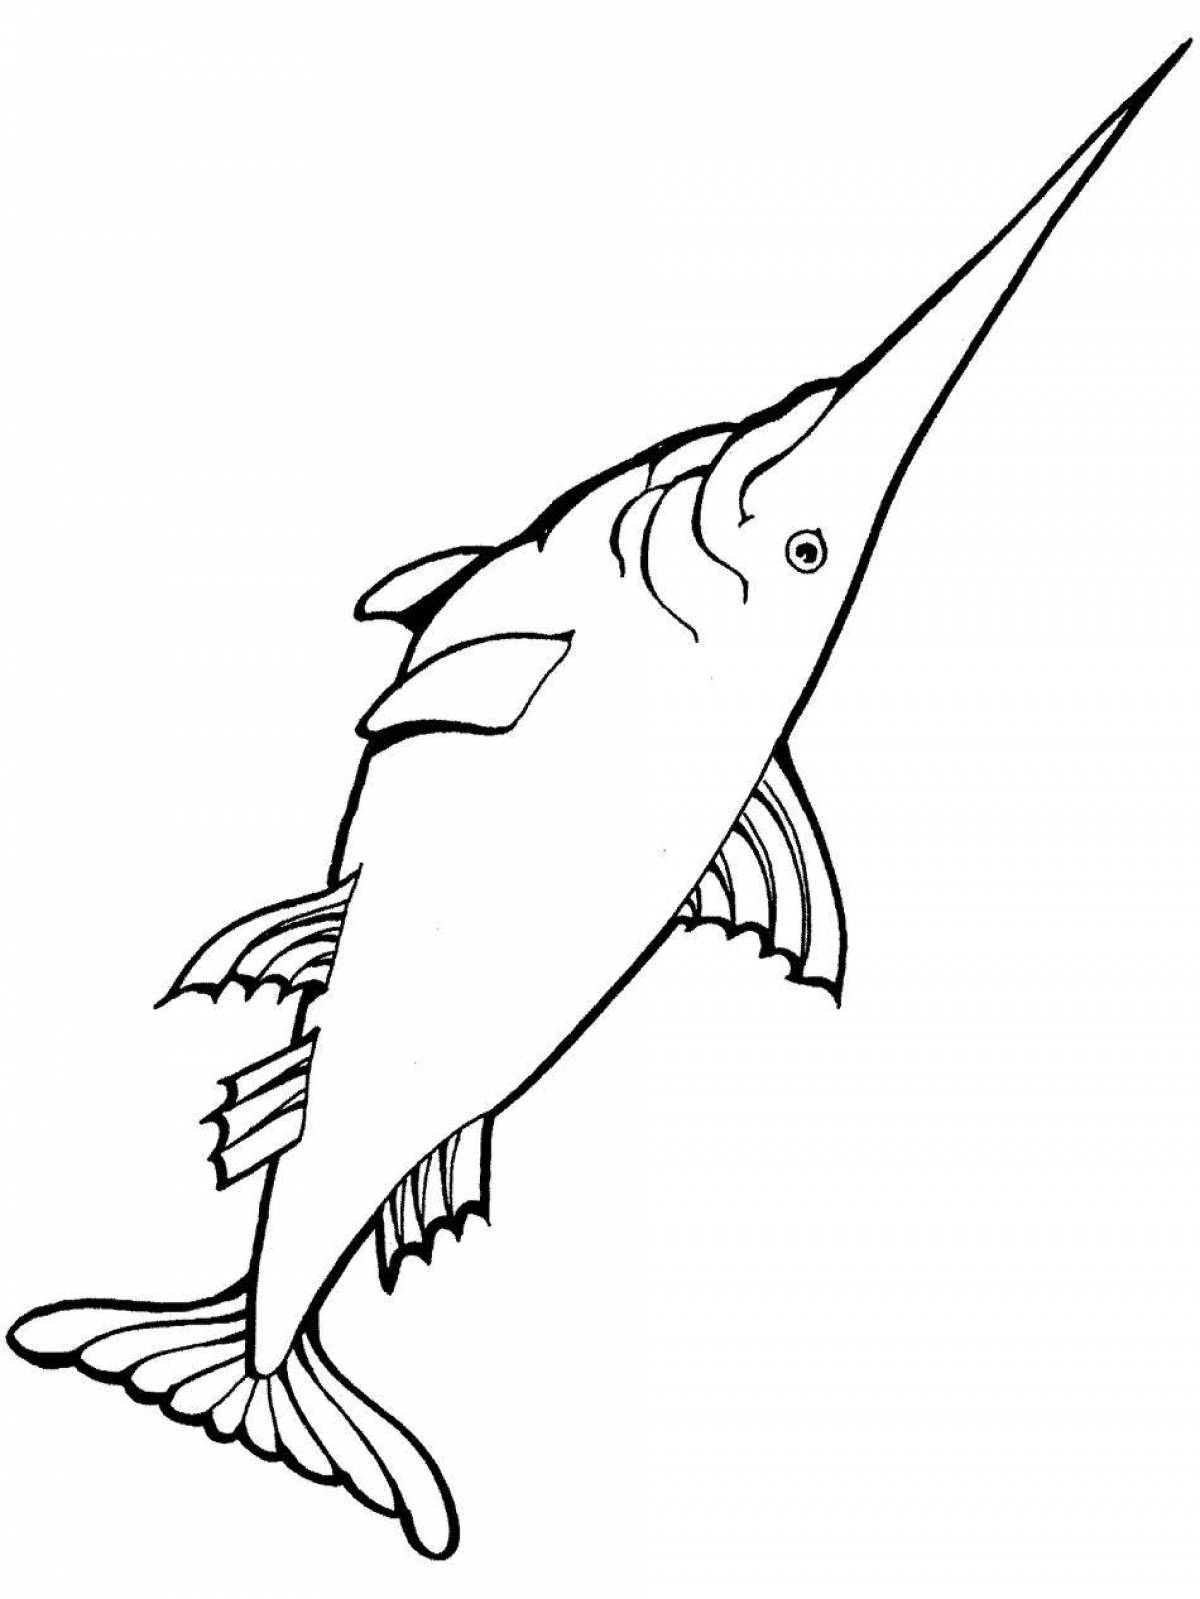 Раскраска сказочная рыба-парусник